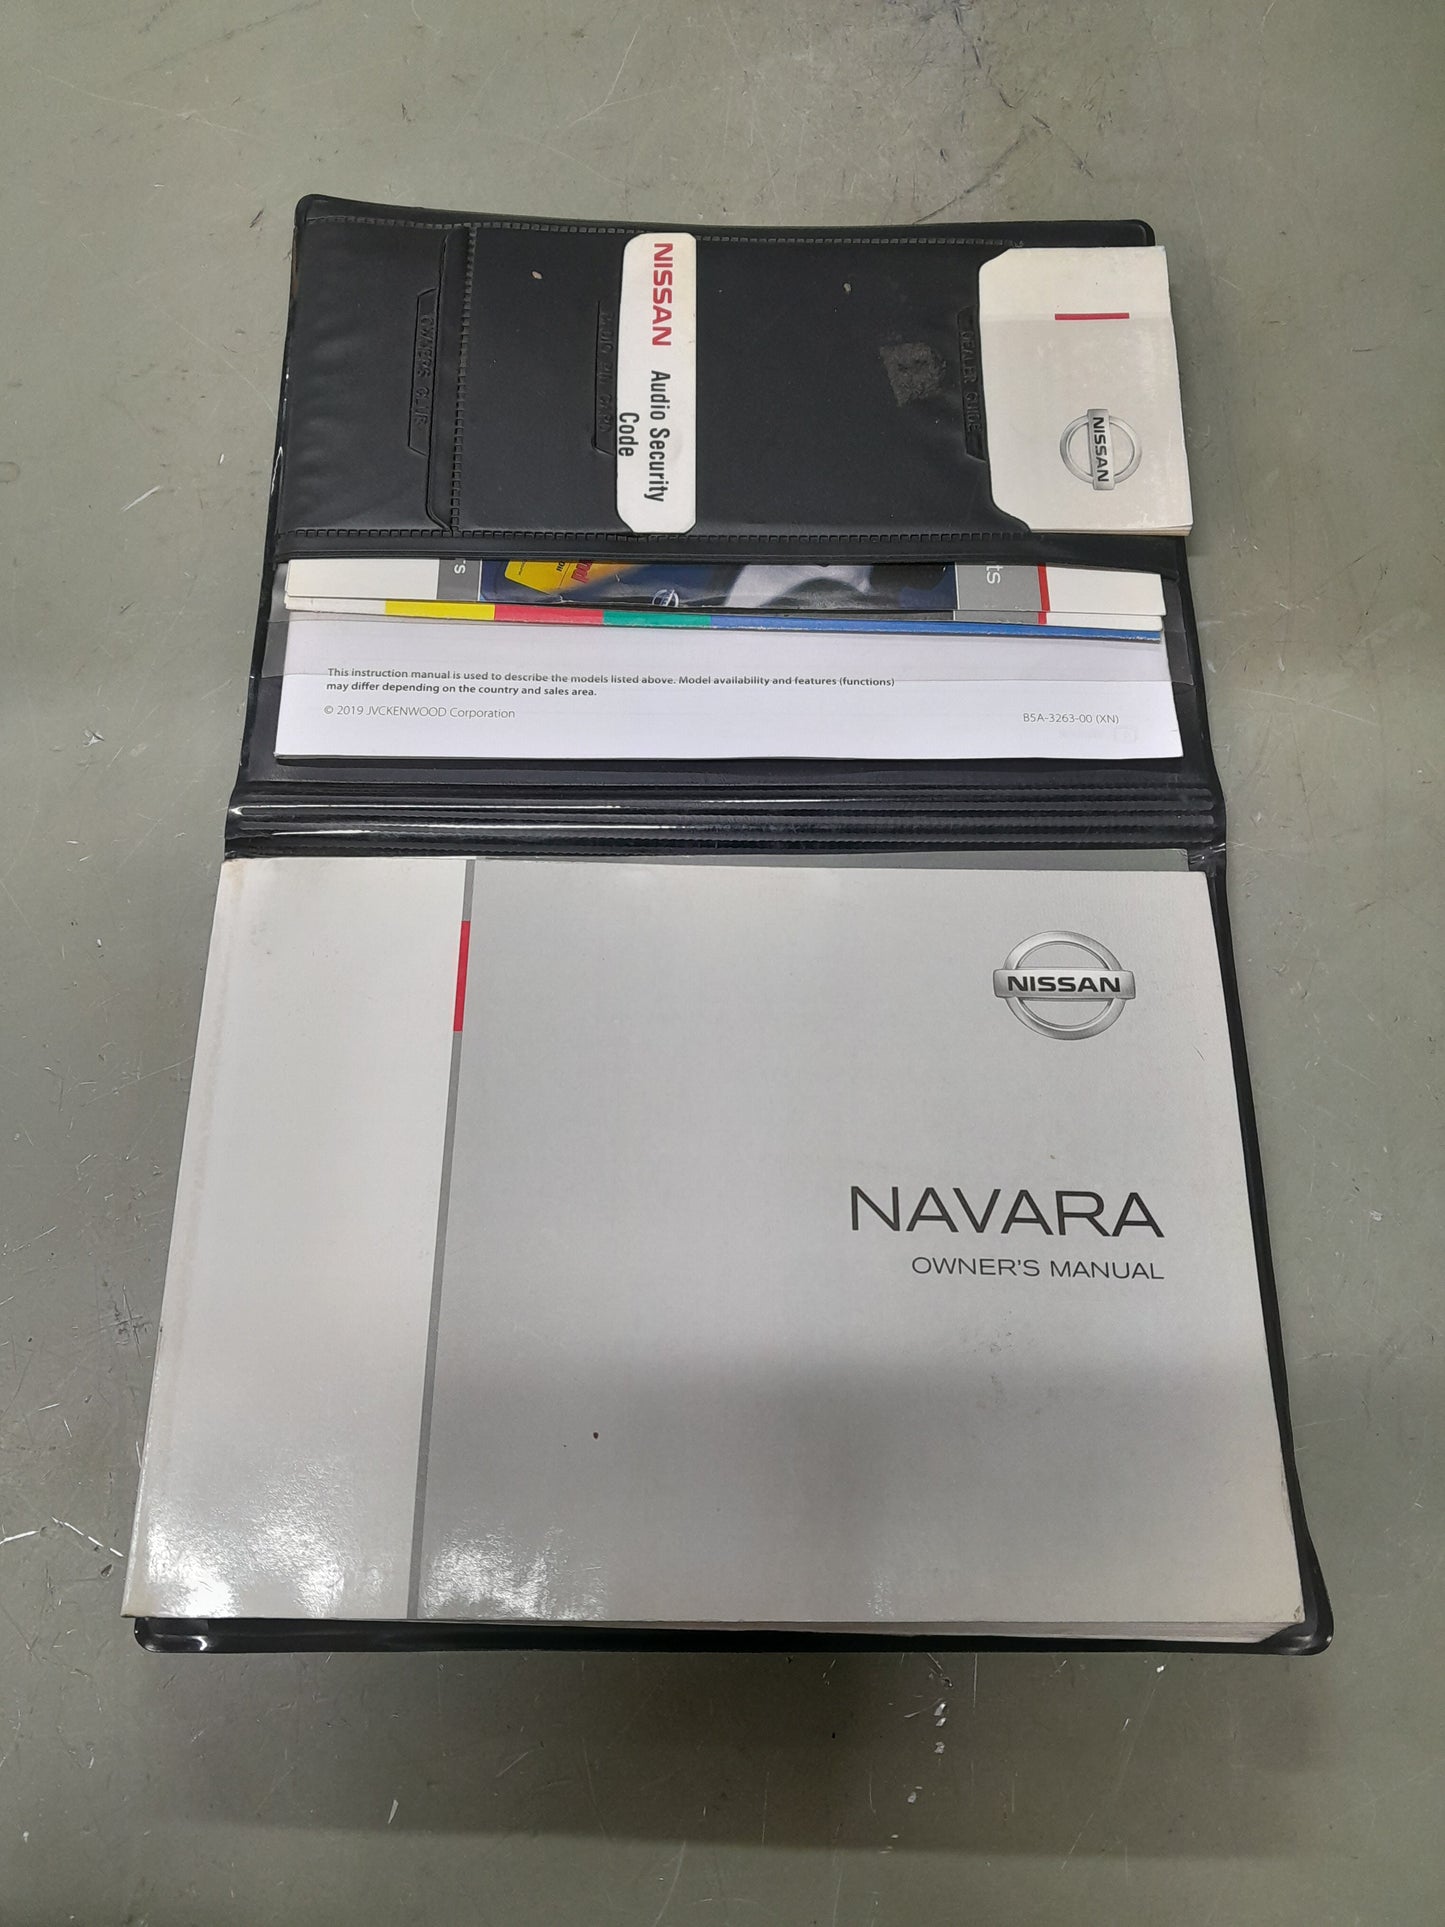 Nissan Navara Owners Manual